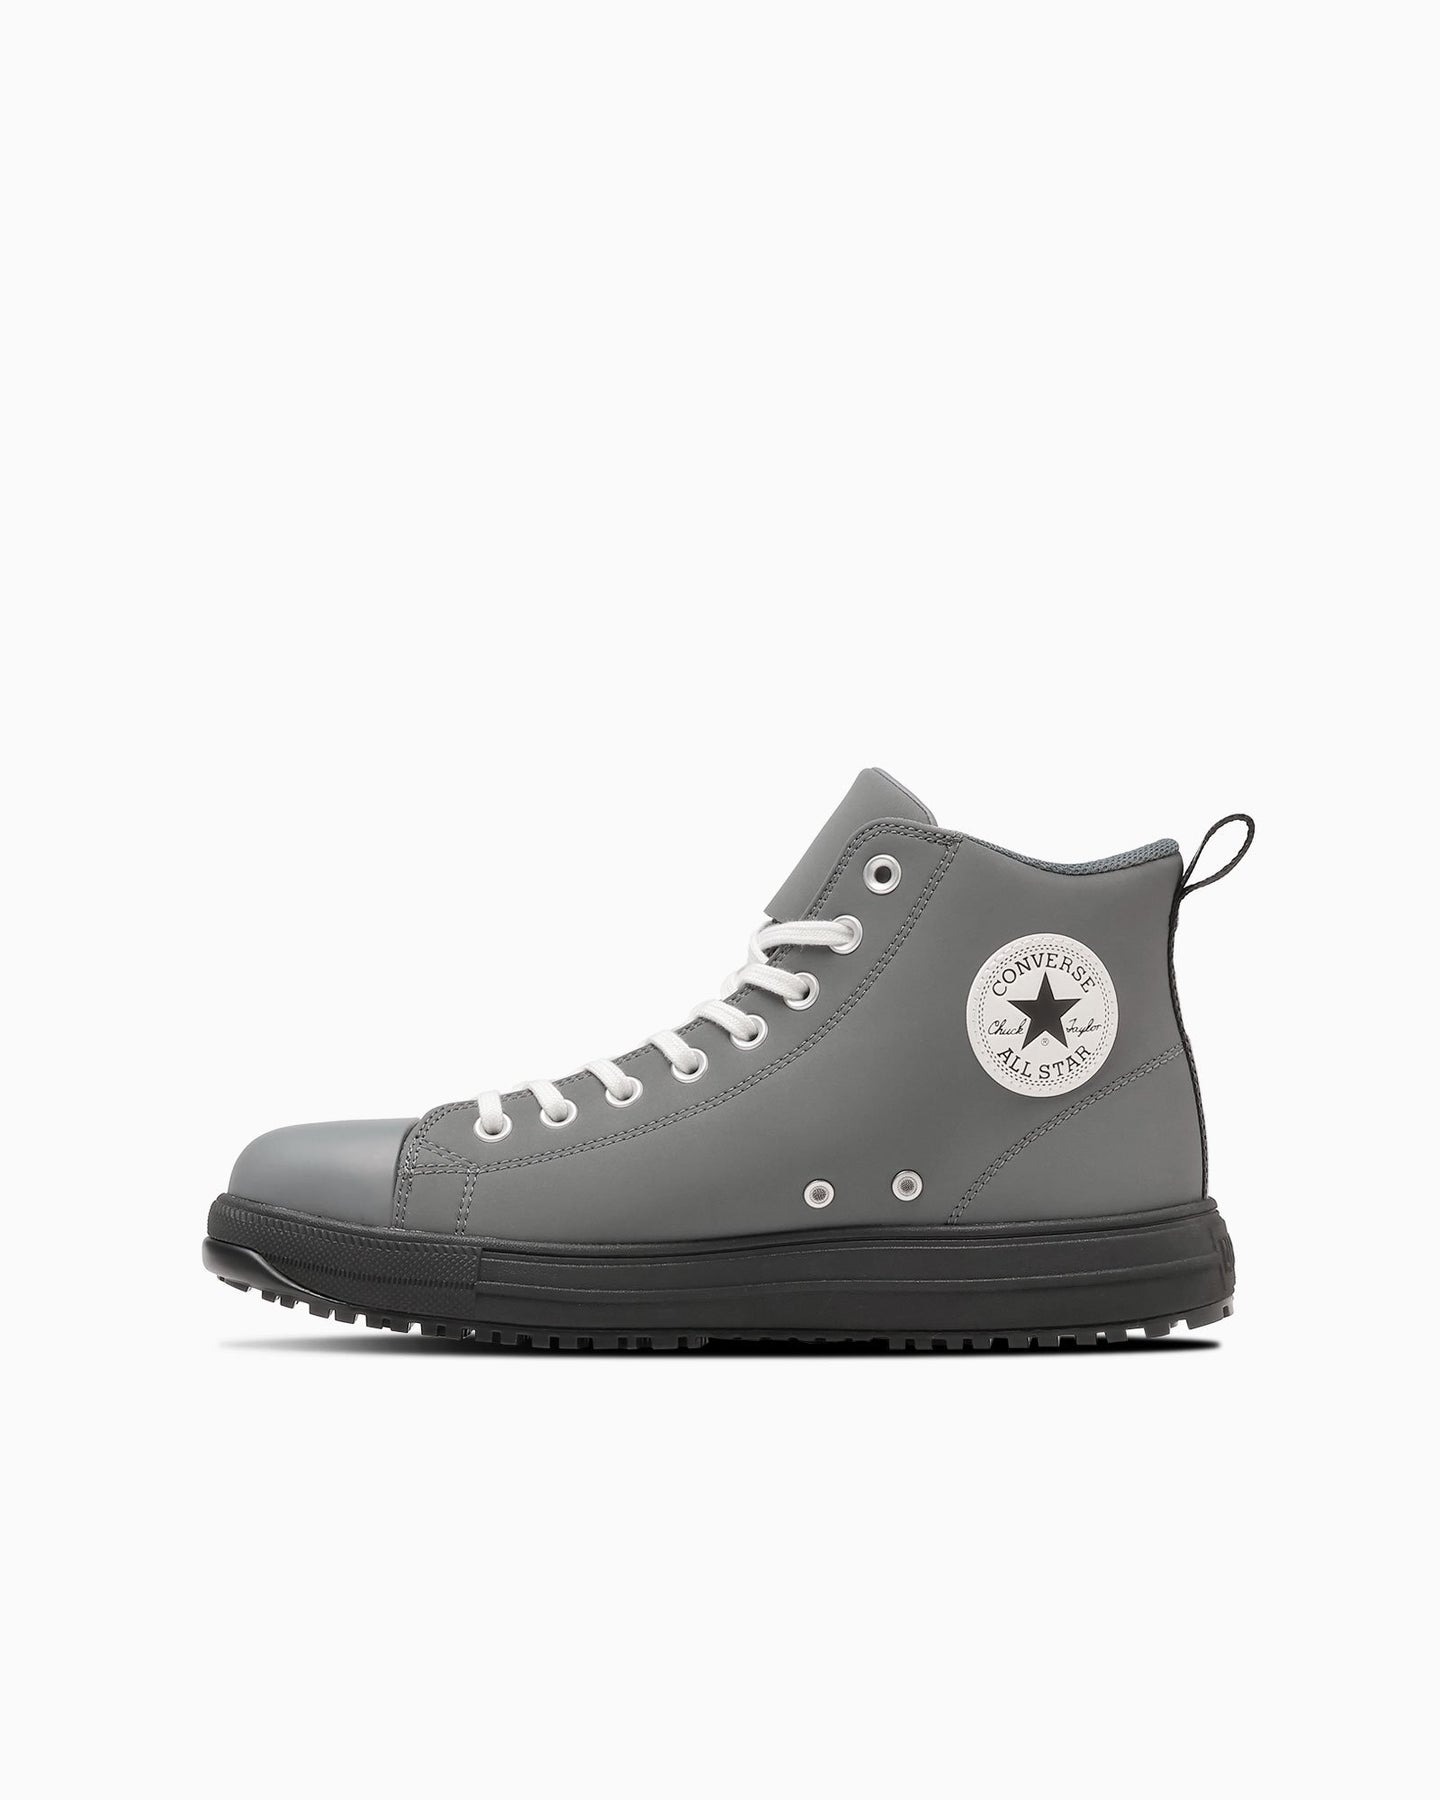 日本限定Converse ALL STAR PS Z HI 工作鞋安全鞋拉鍊灰色29 cm | 誠品線上